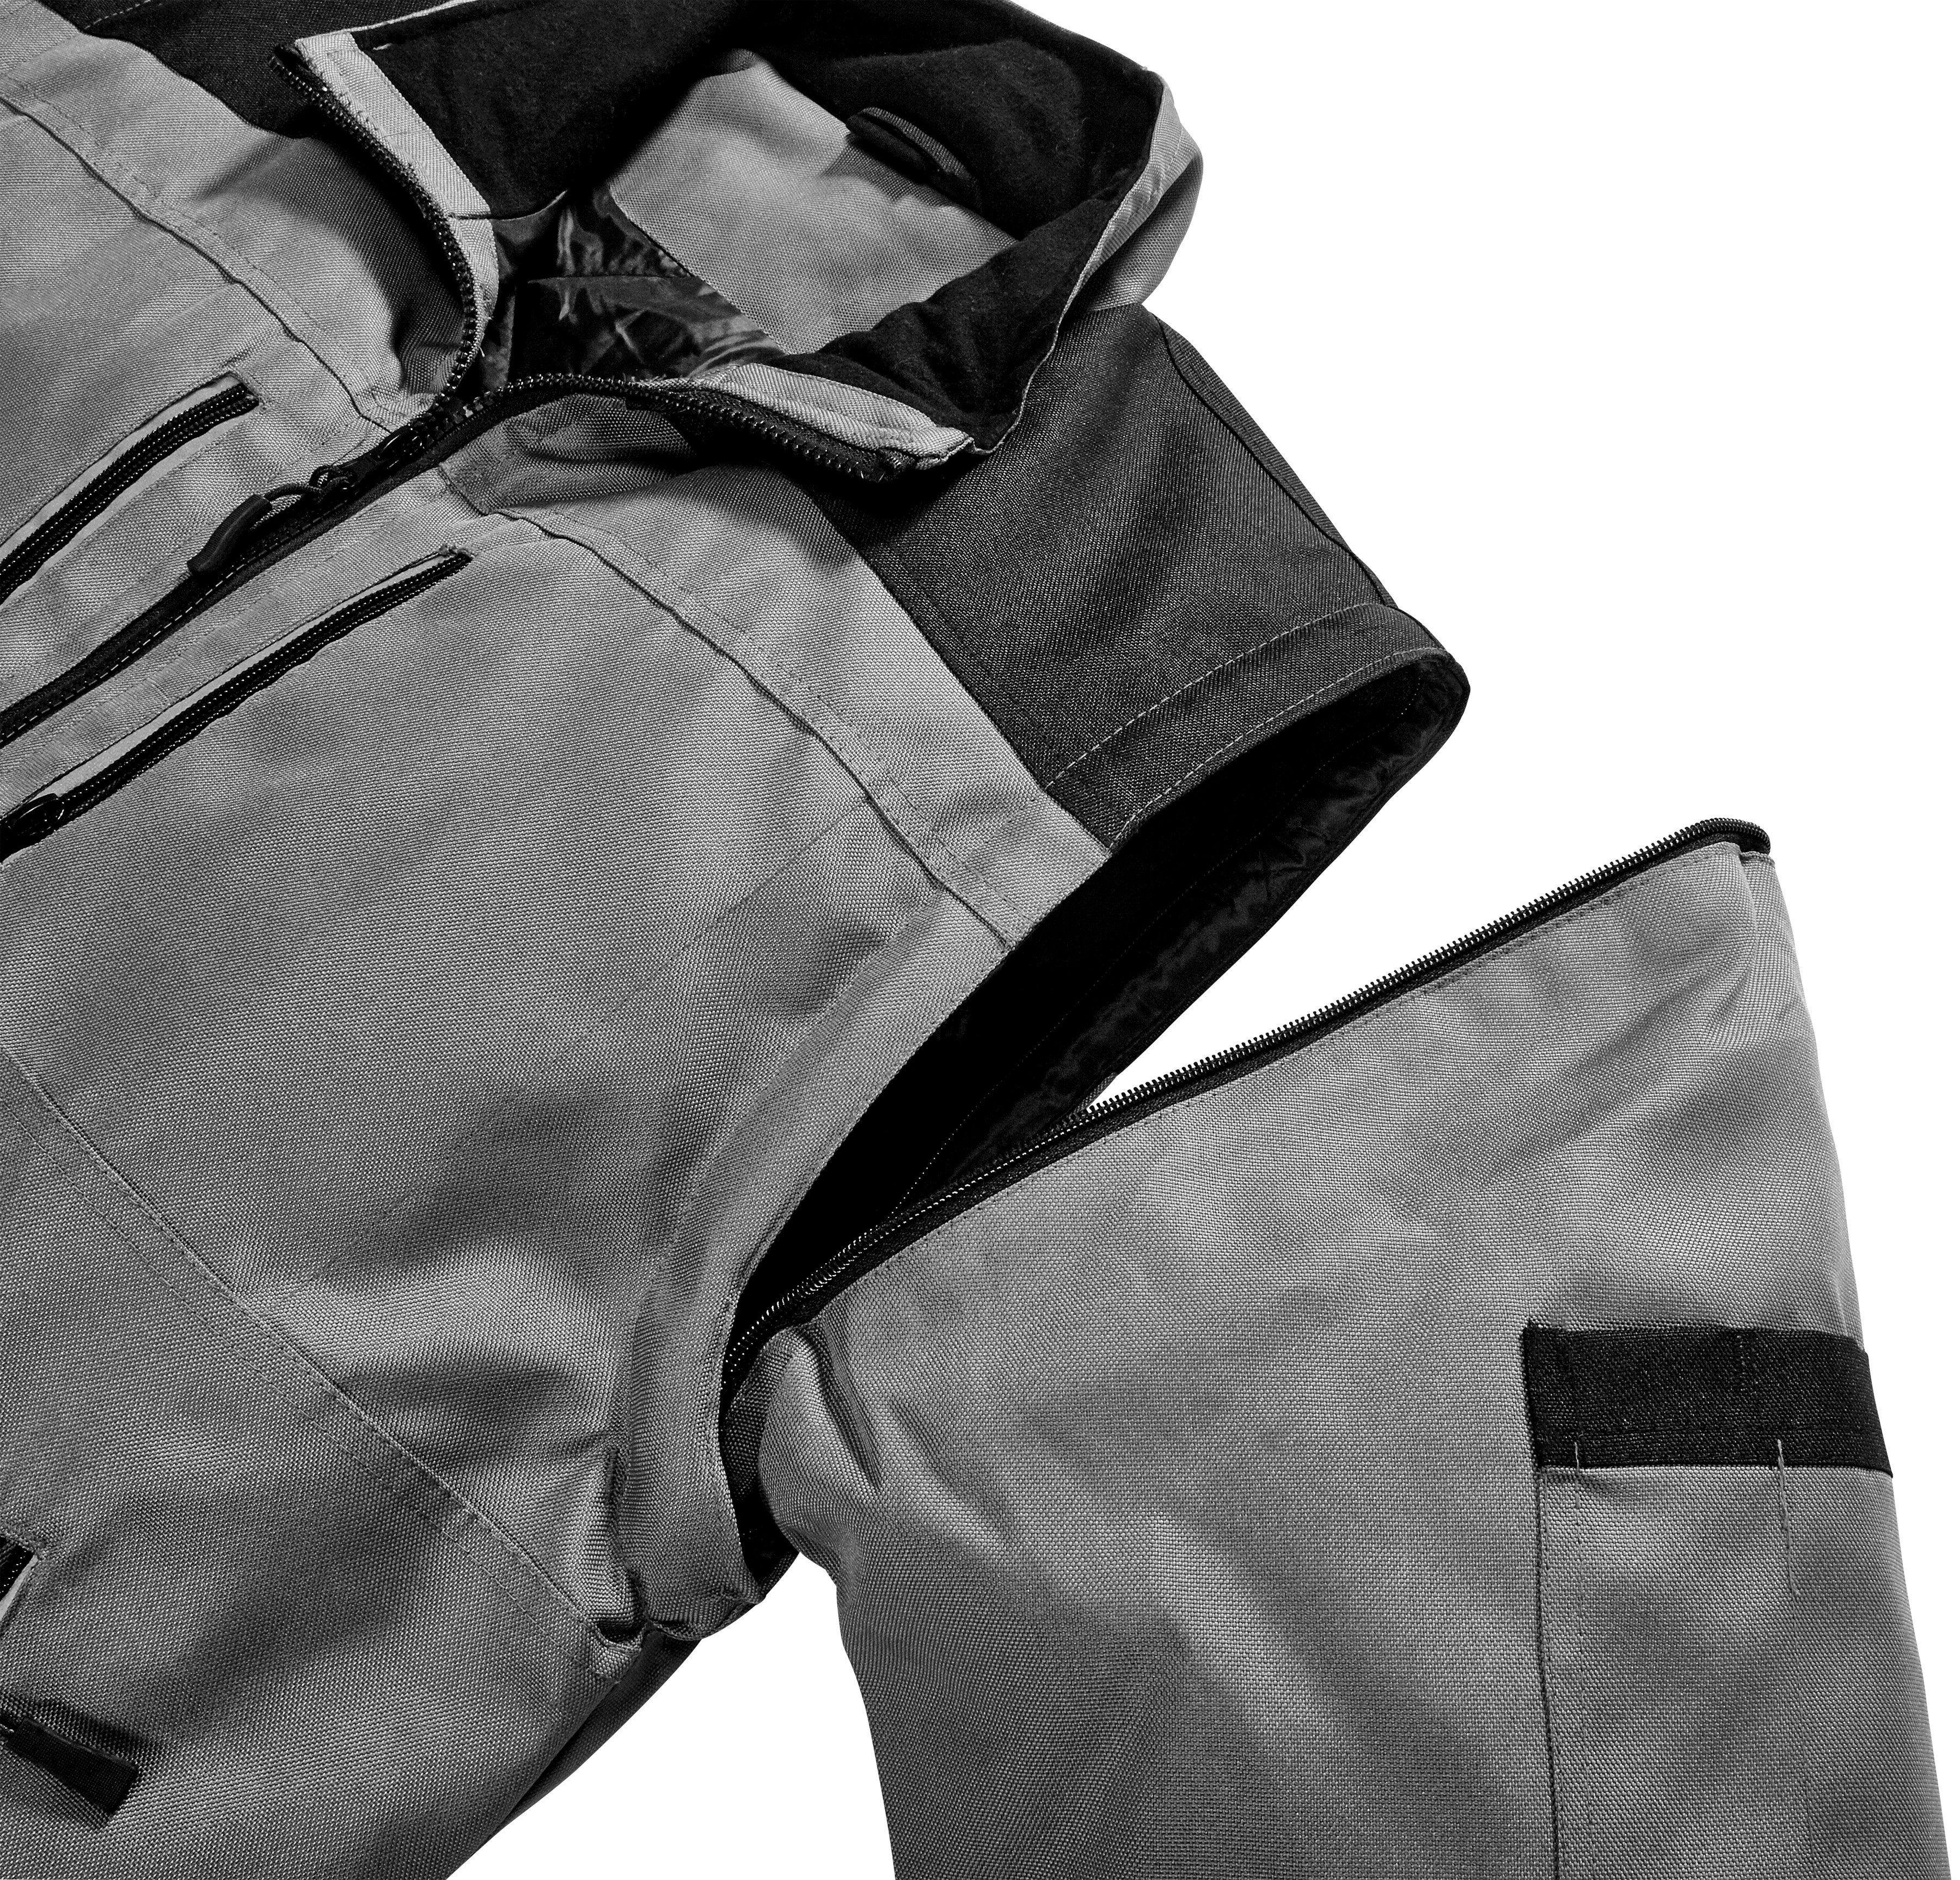 safety& more Arbeitsjacke Reflexelemente Extreme grau-schwarz